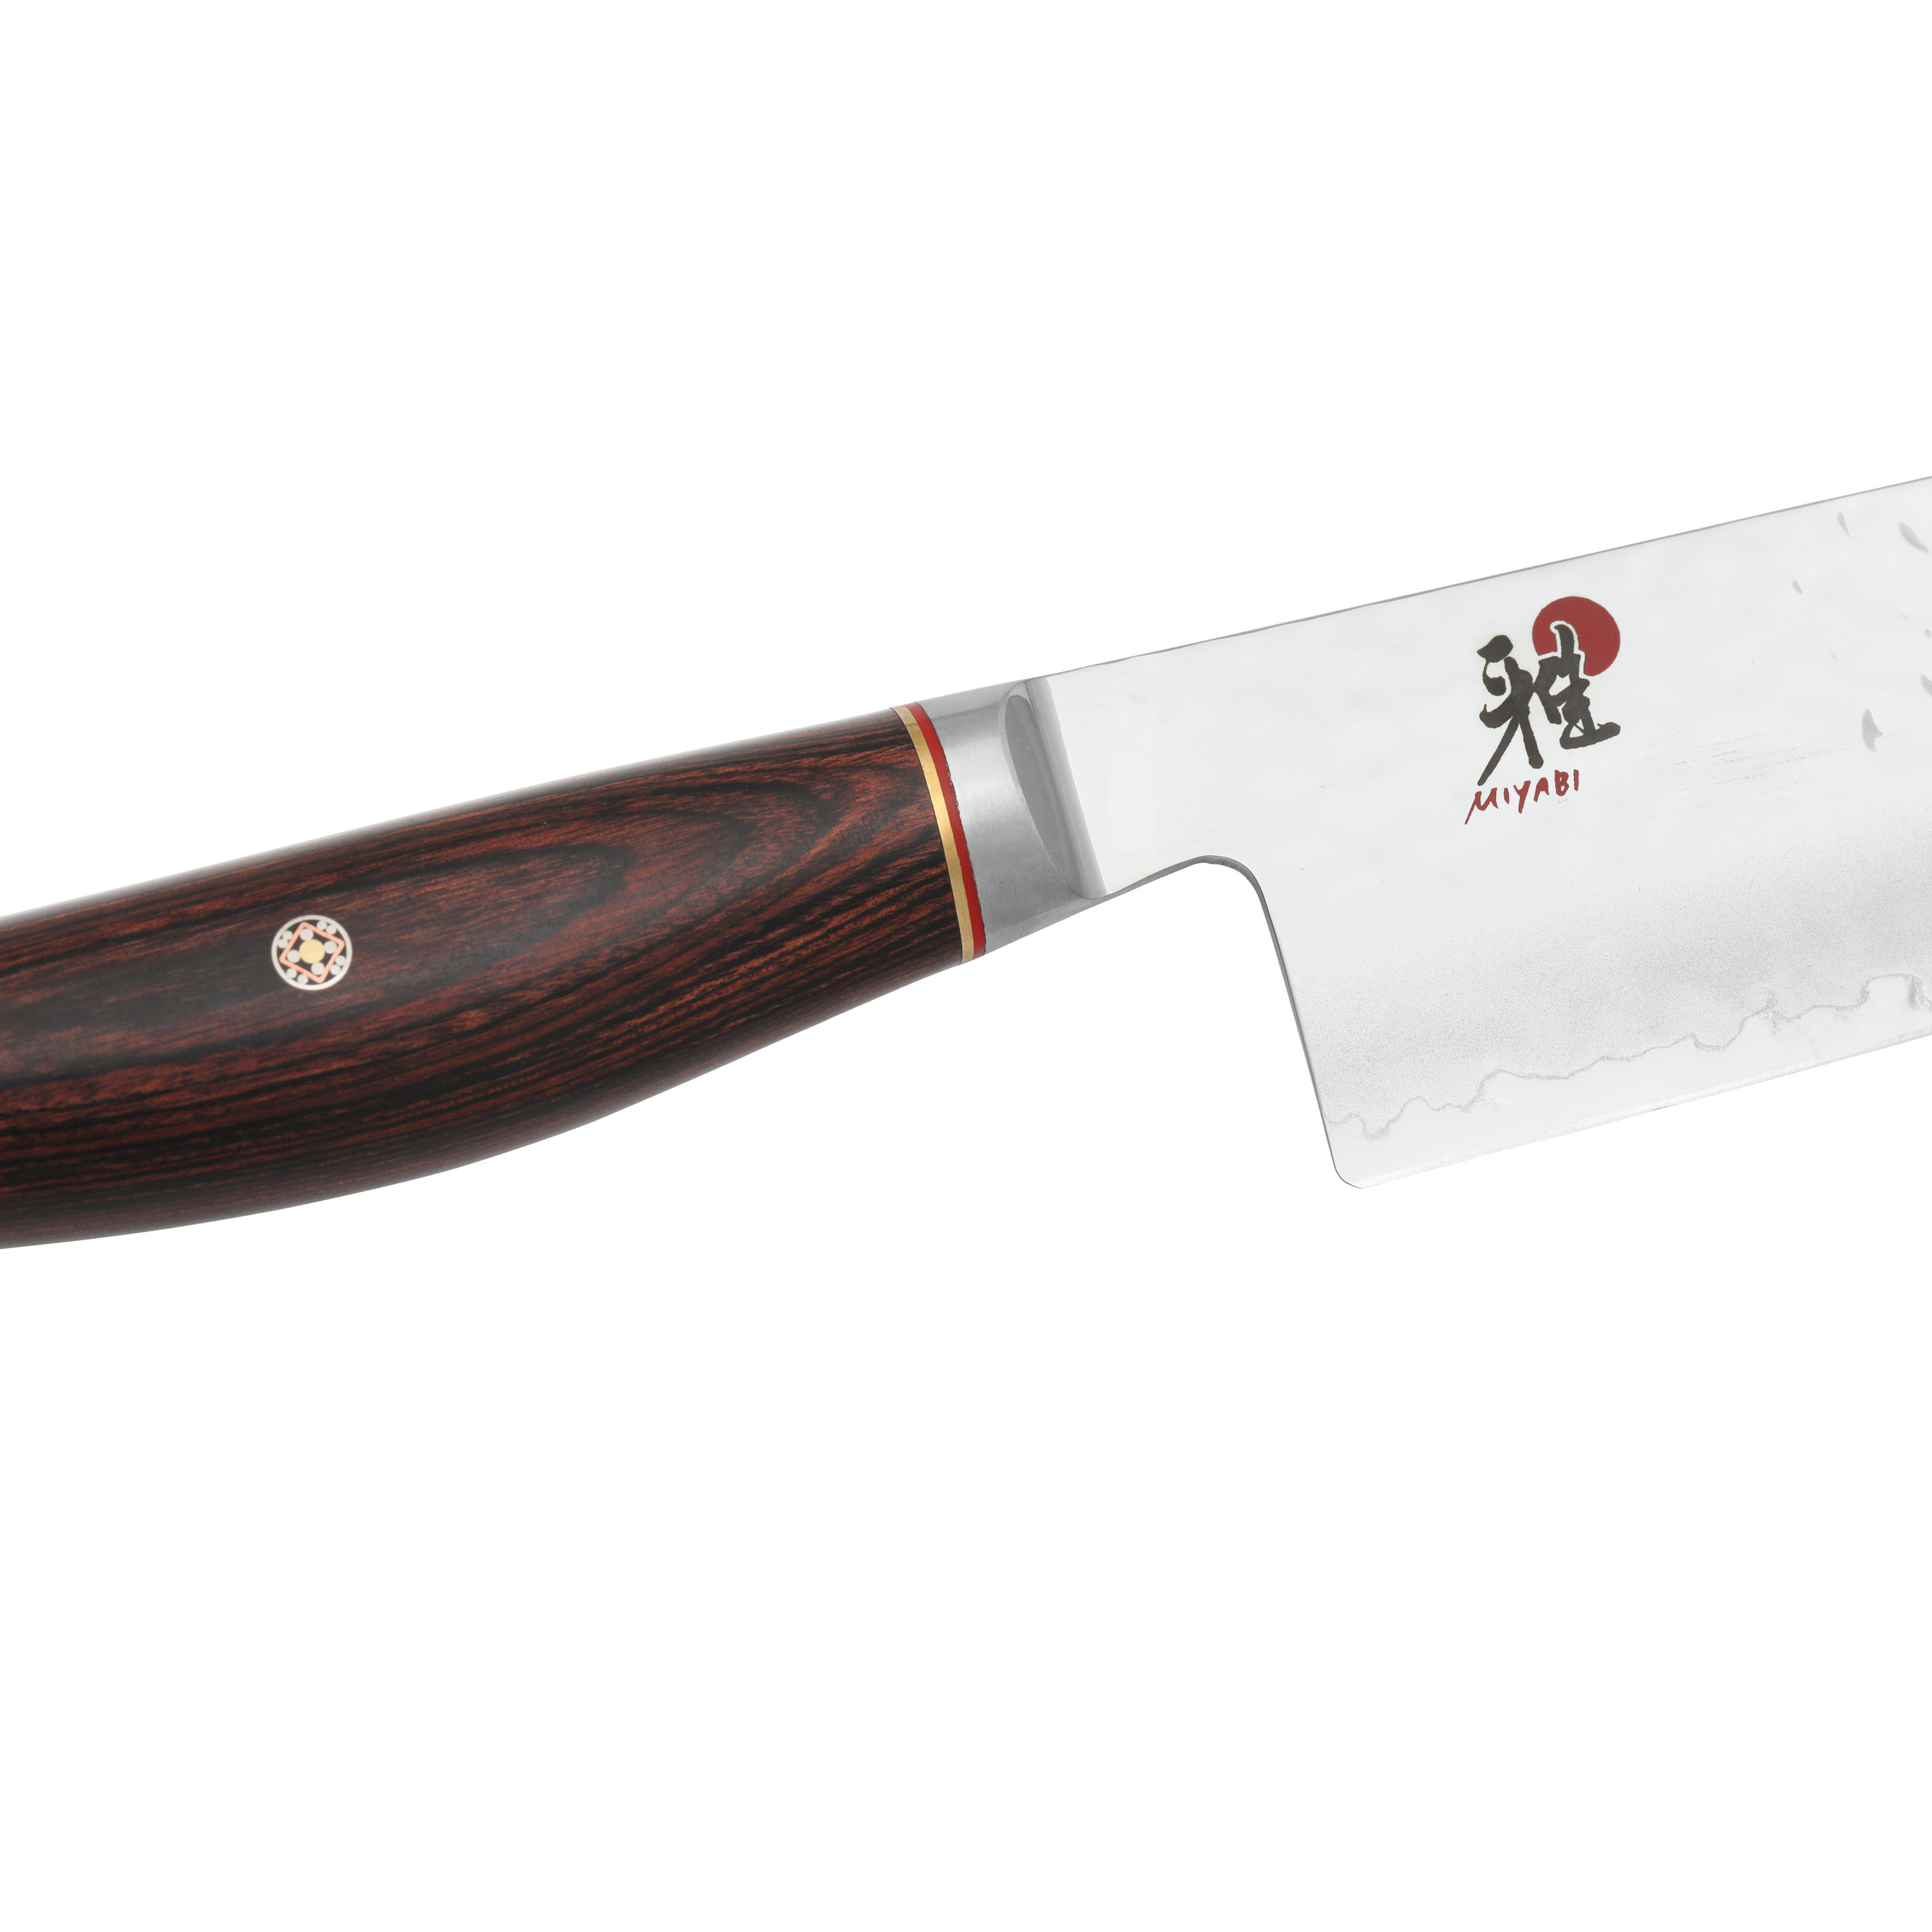 3.5″ Paring Knife | Artisan Series